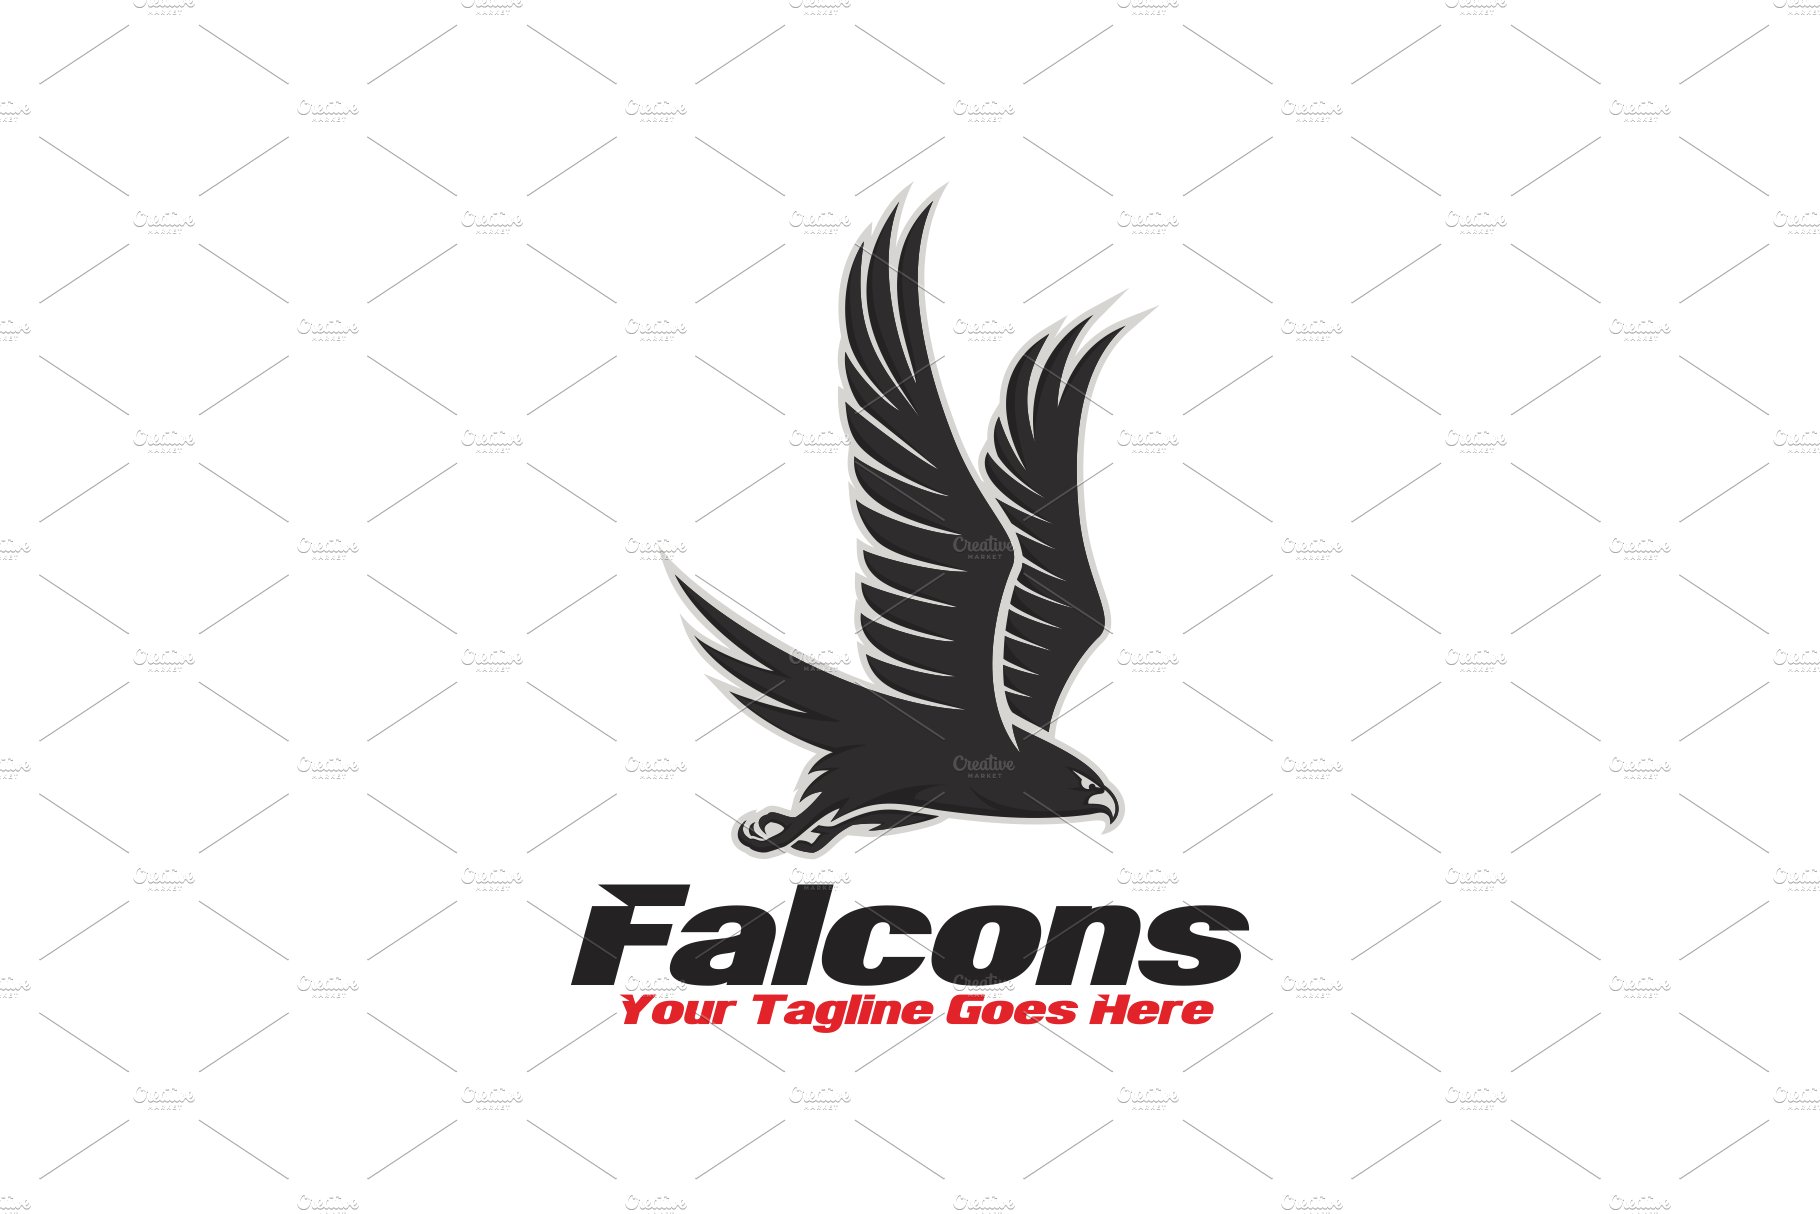 Falcons Logo cover image.